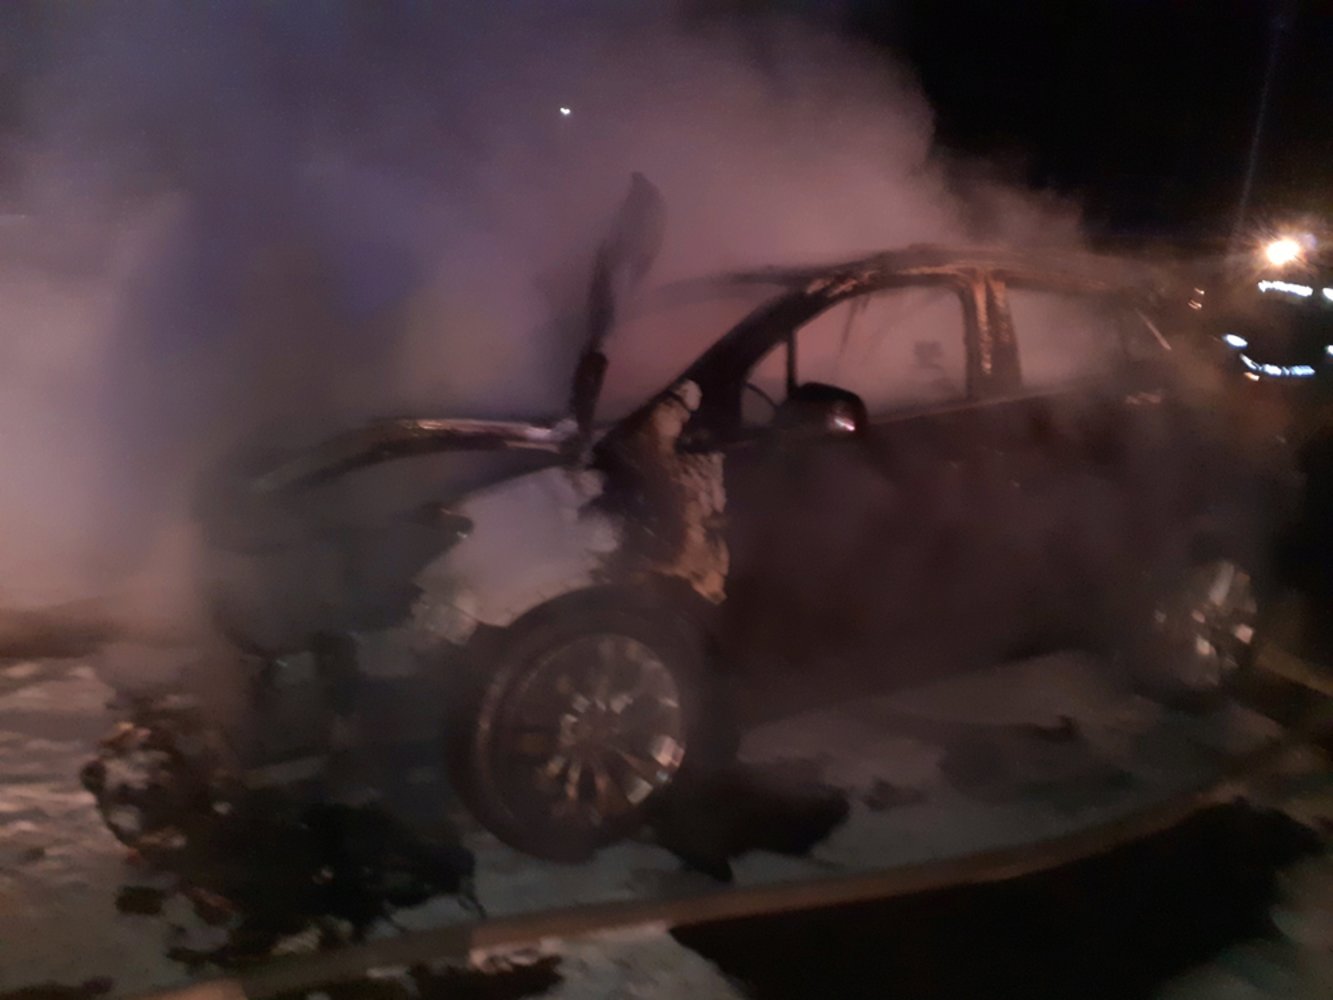 В Ярославле ночью сгорели две машины: видео